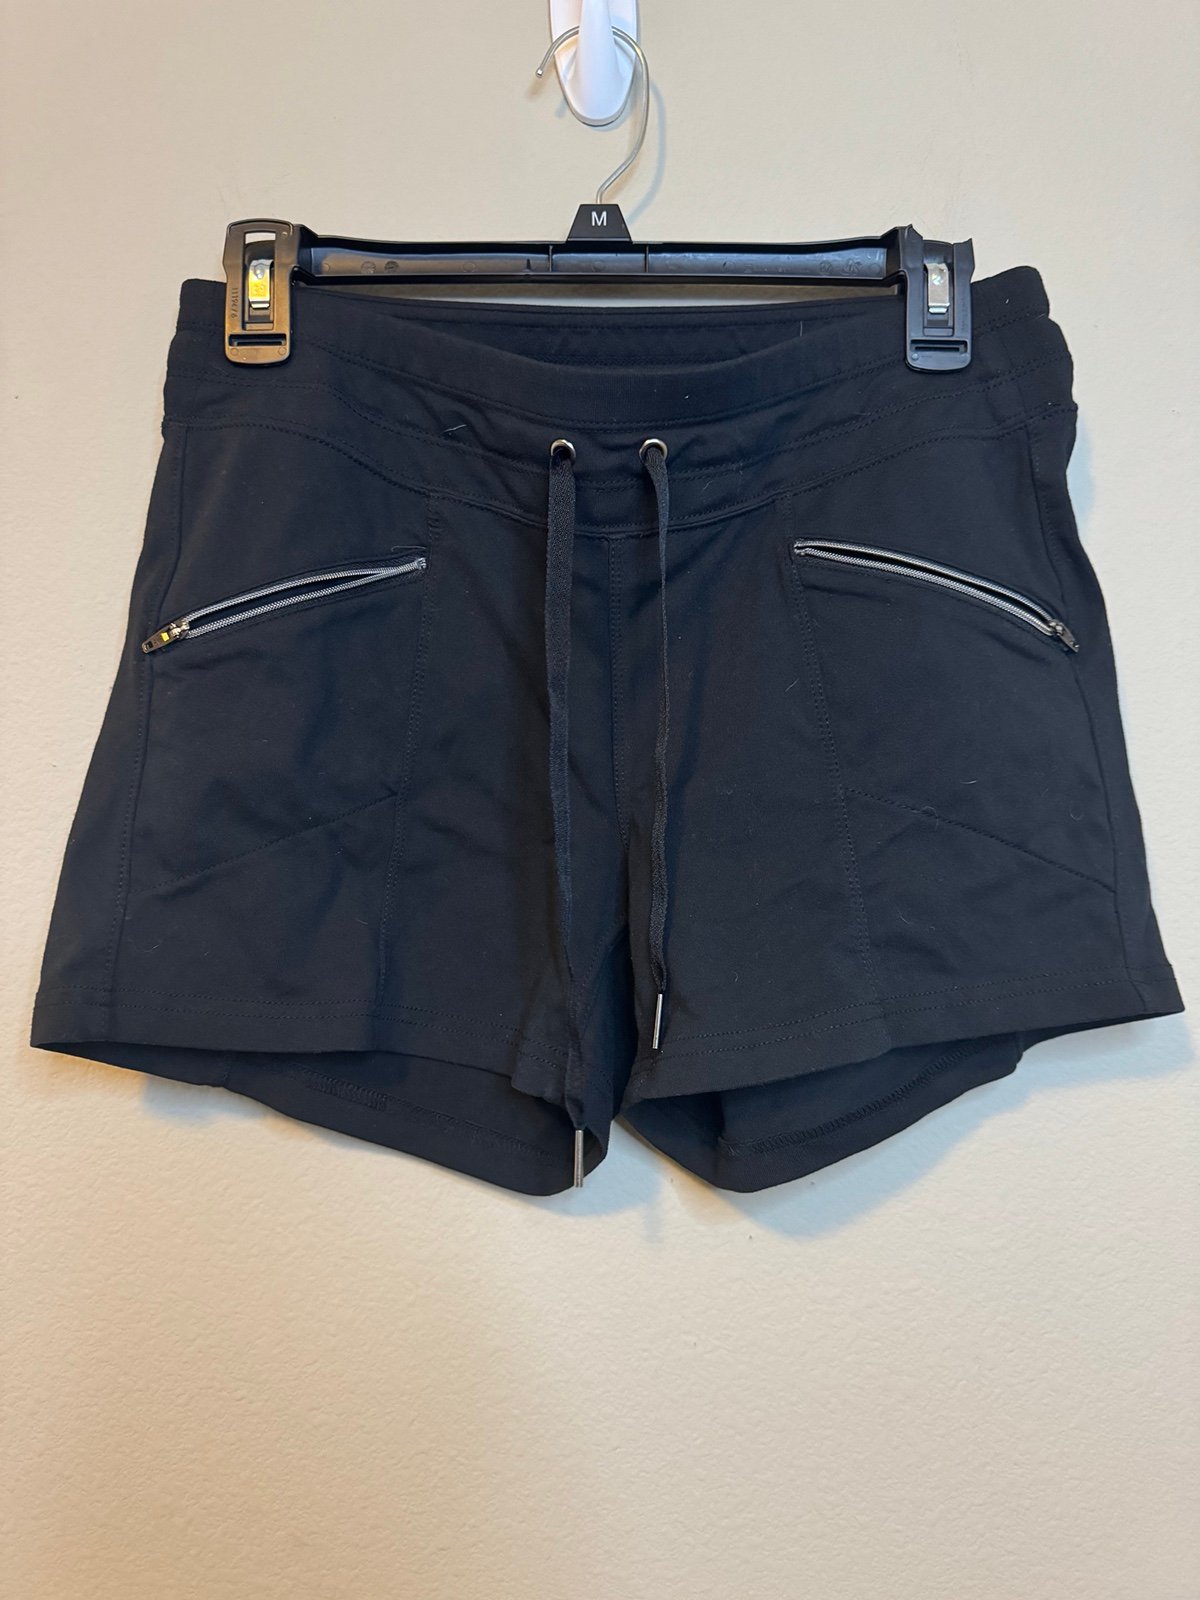 large selection Athleta Black Zipper Pocket Shorts Size